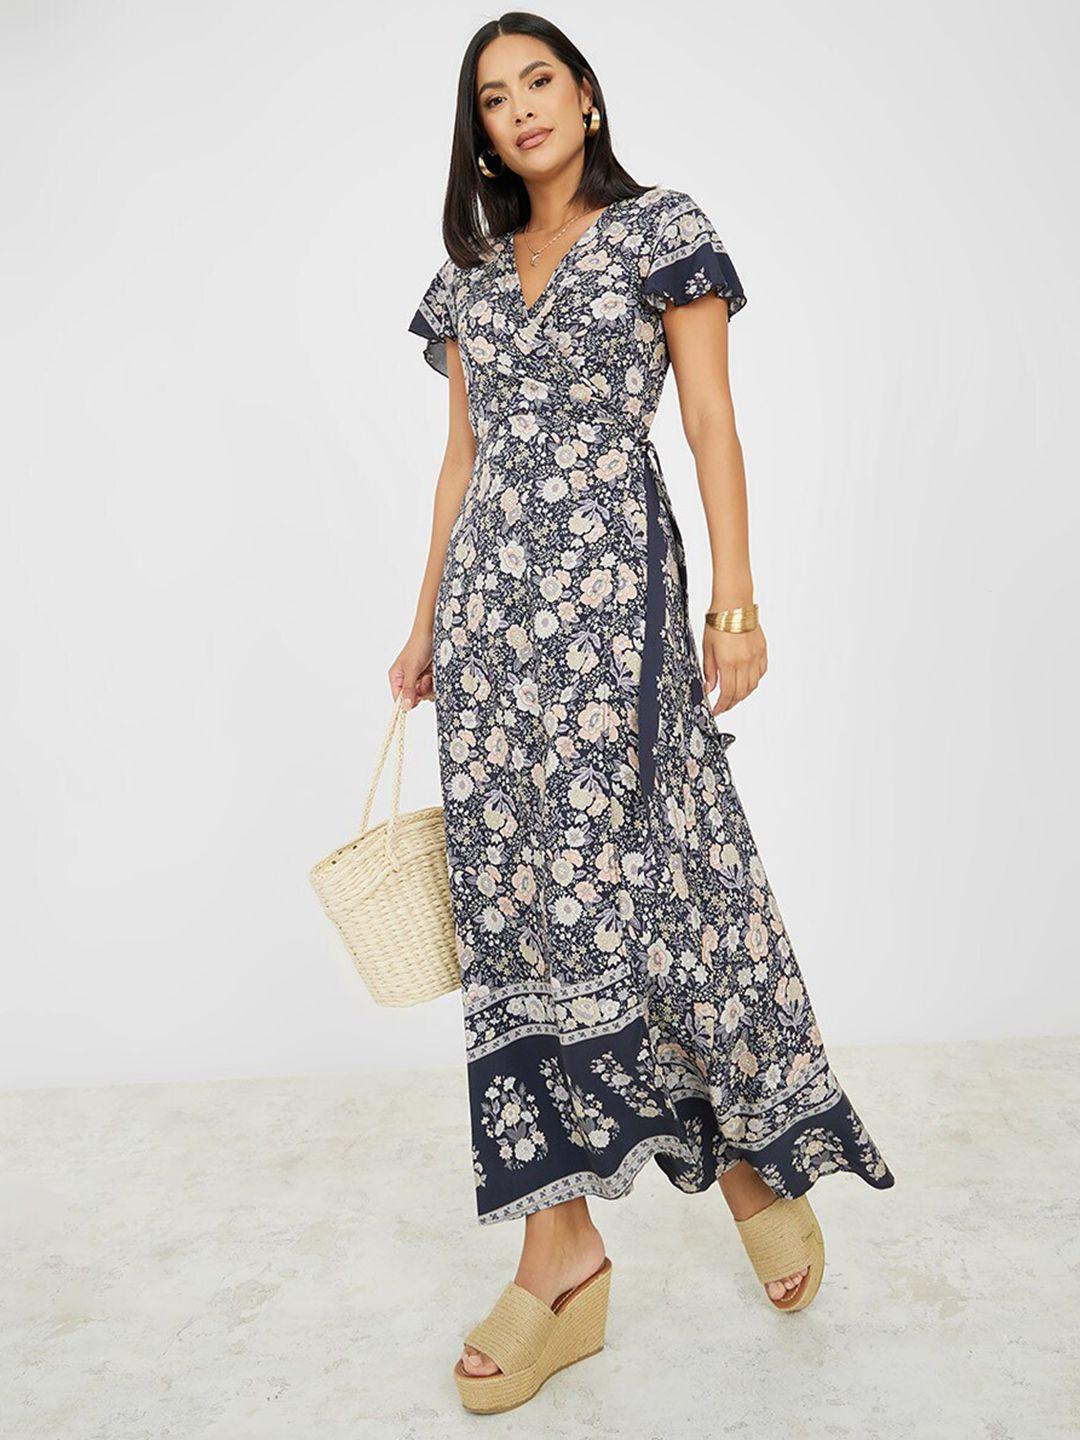 styli grey floral print maxi dress